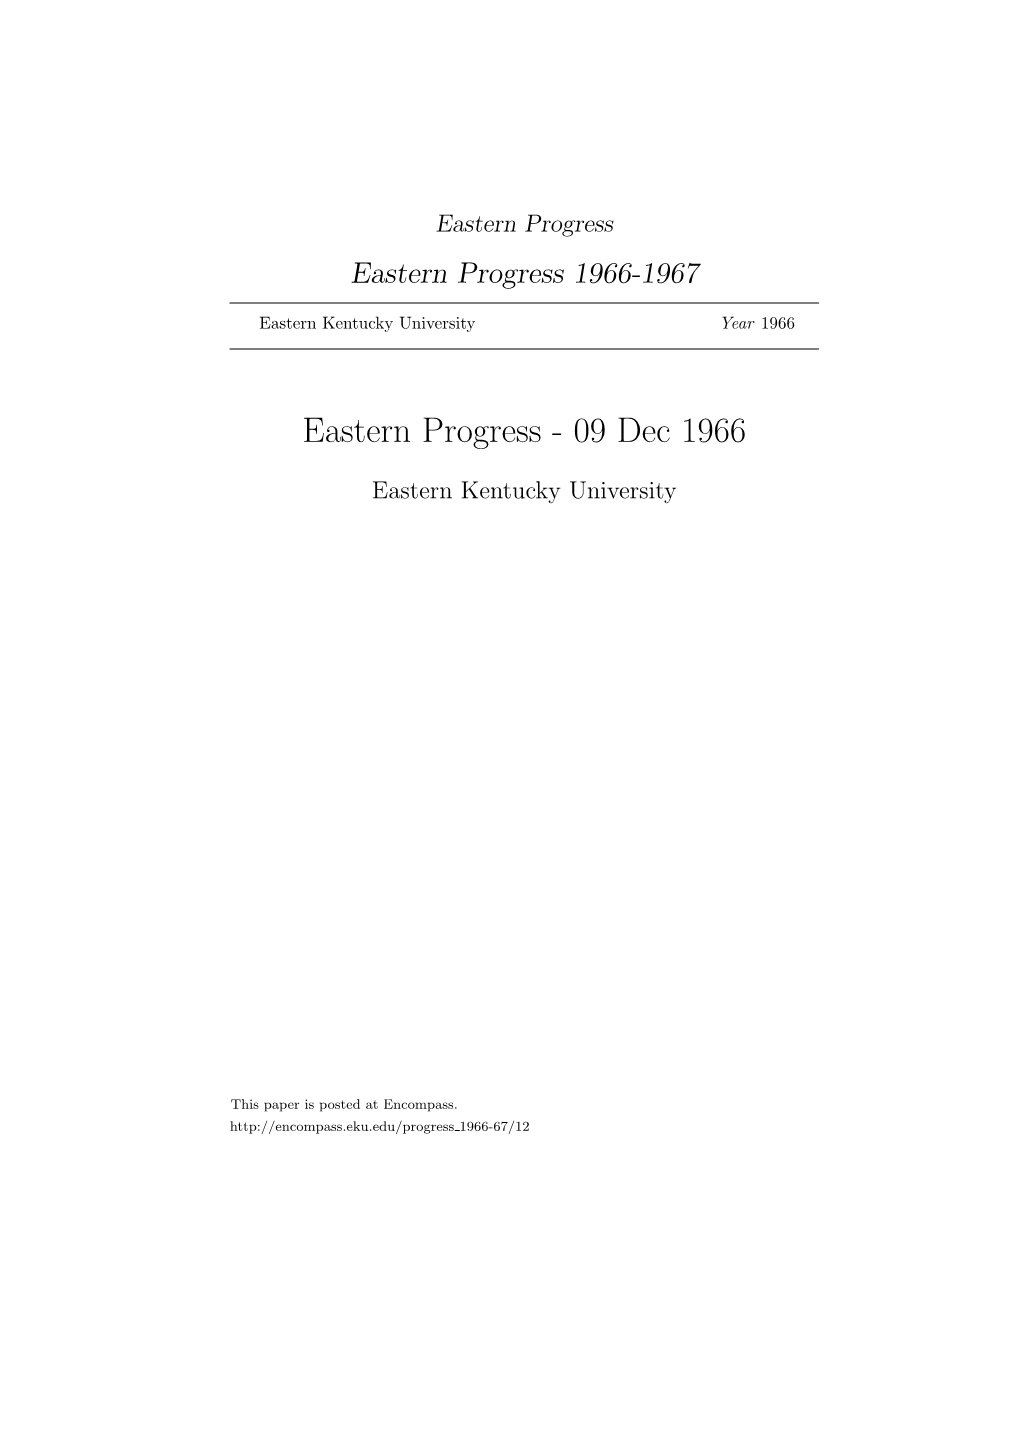 Eastern Progress Eastern Progress 1966-1967